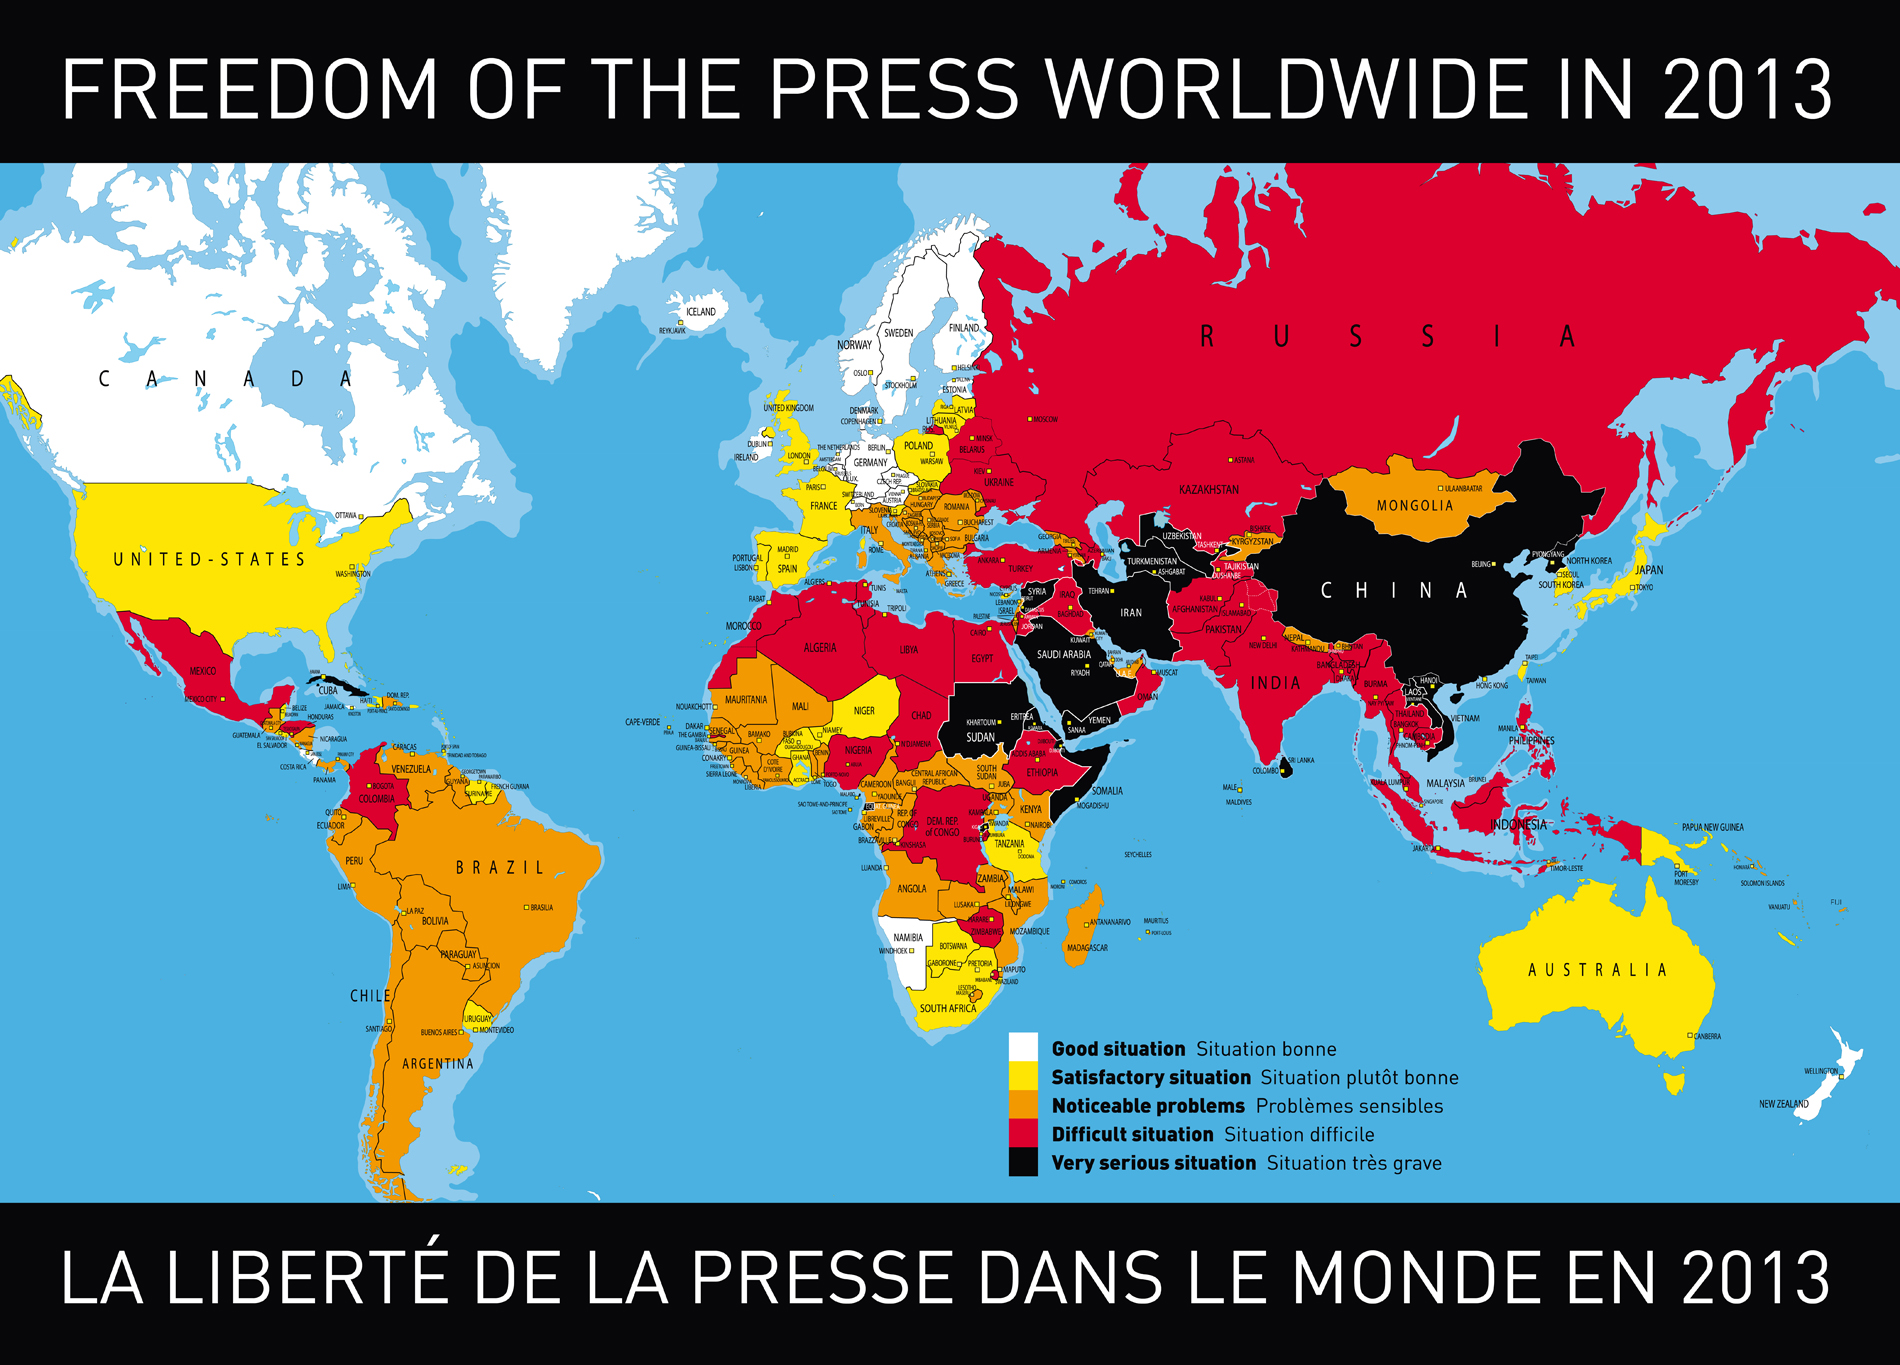 حرية الصحافة في جميع أنحاء العالم في عام 2013. المصدر: منظمة مراسلون بلا حدود على فيسبوك